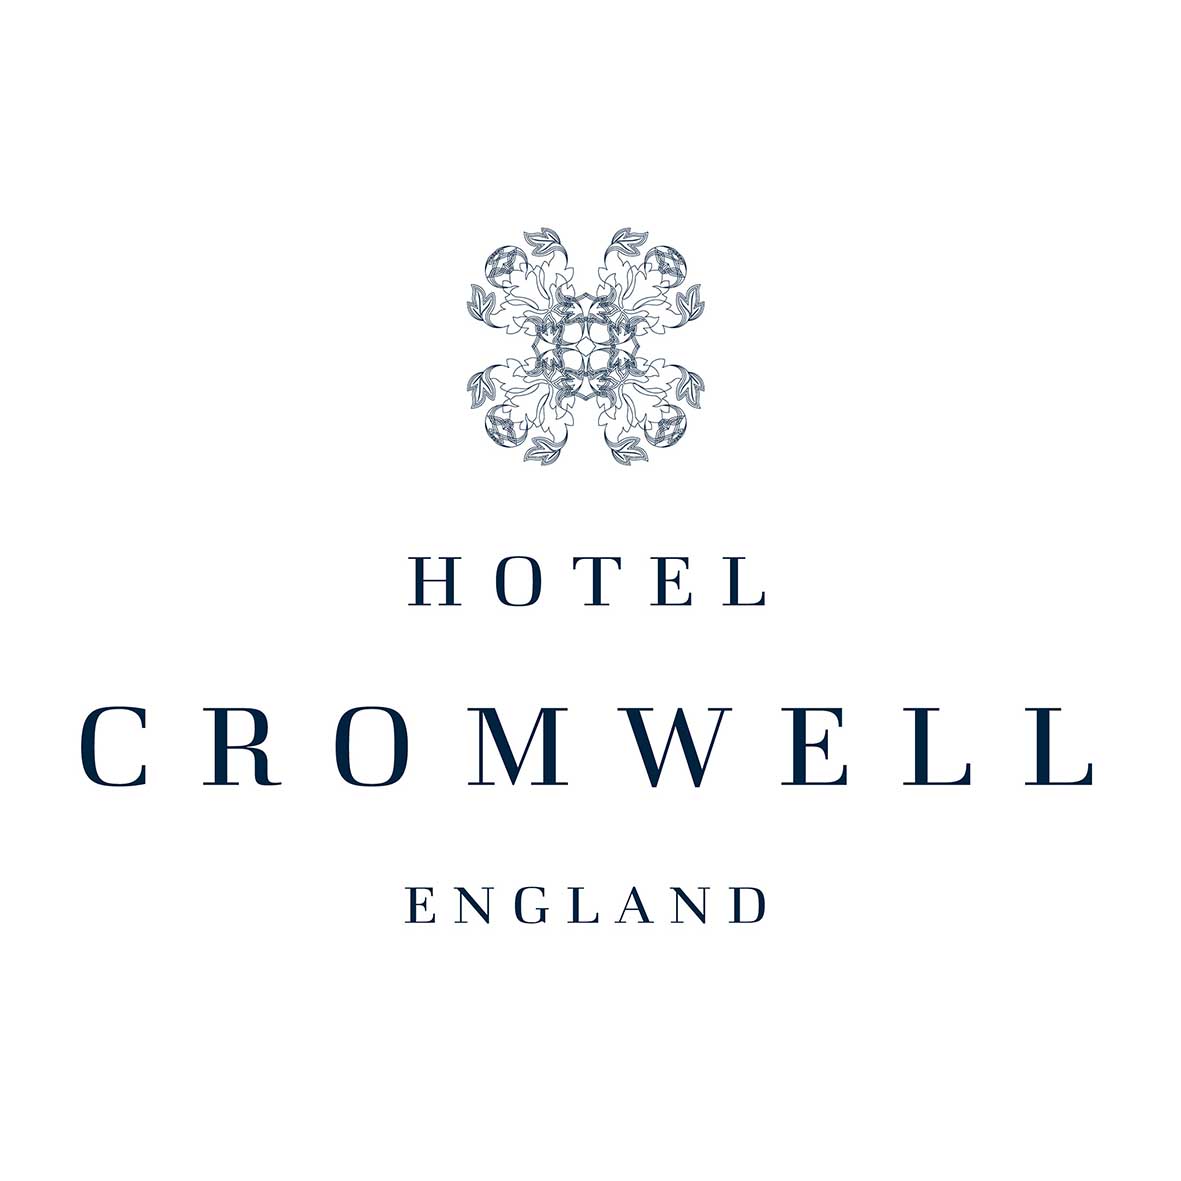 The Cromwell Hotel in Stevenage logo.